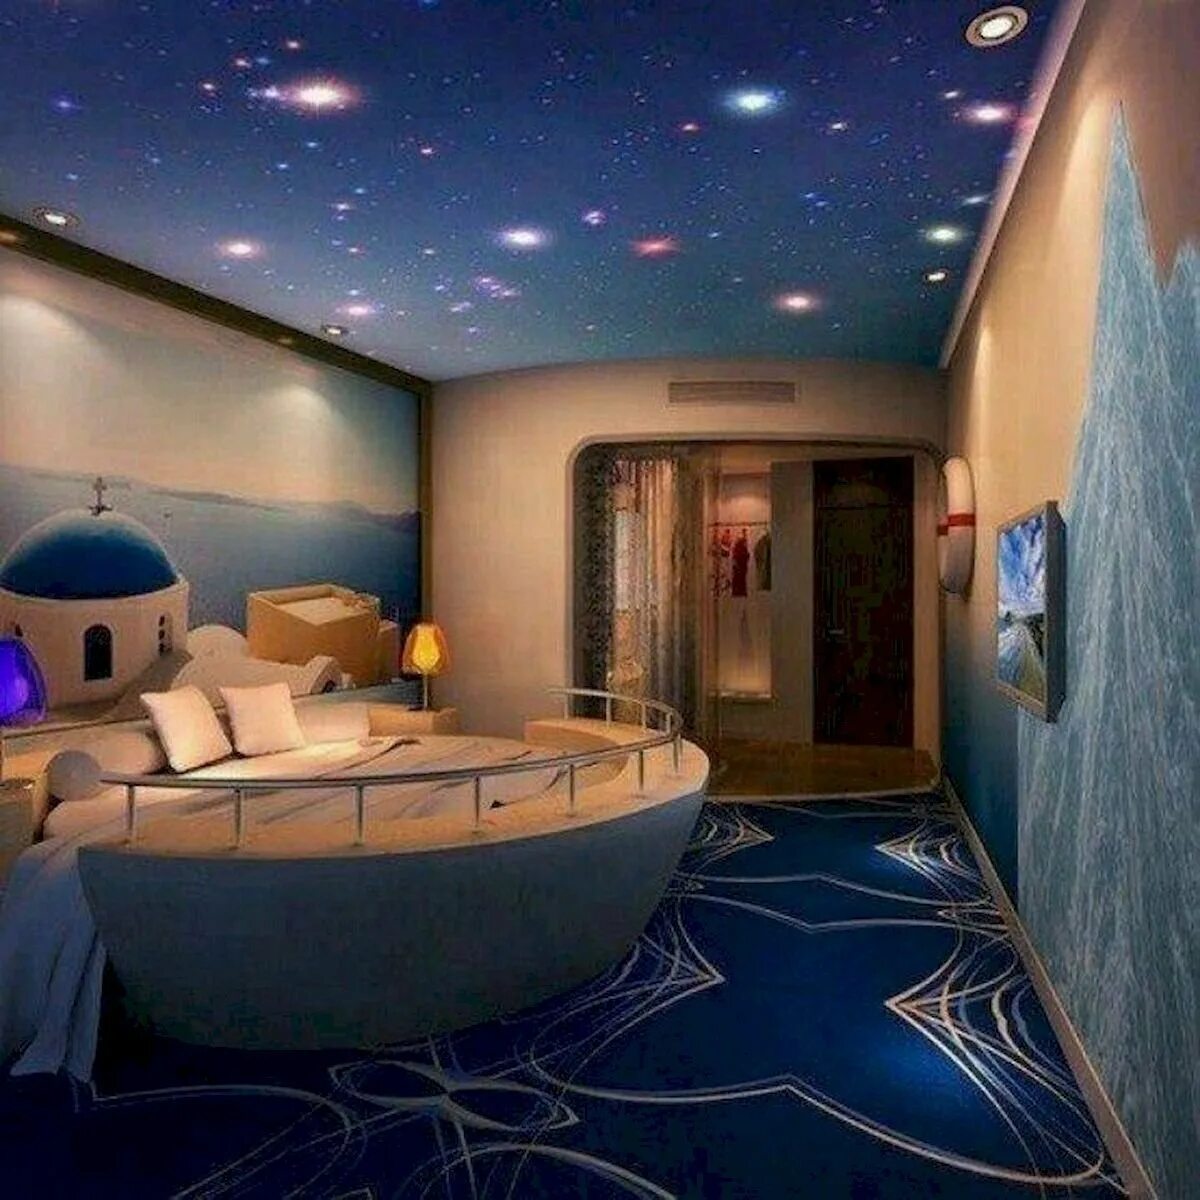 Вб для комнаты. Интерьер в космическом стиле. Комната в стиле космос. Спальня в космическом стиле. Комната в космичесеом Мтиде.